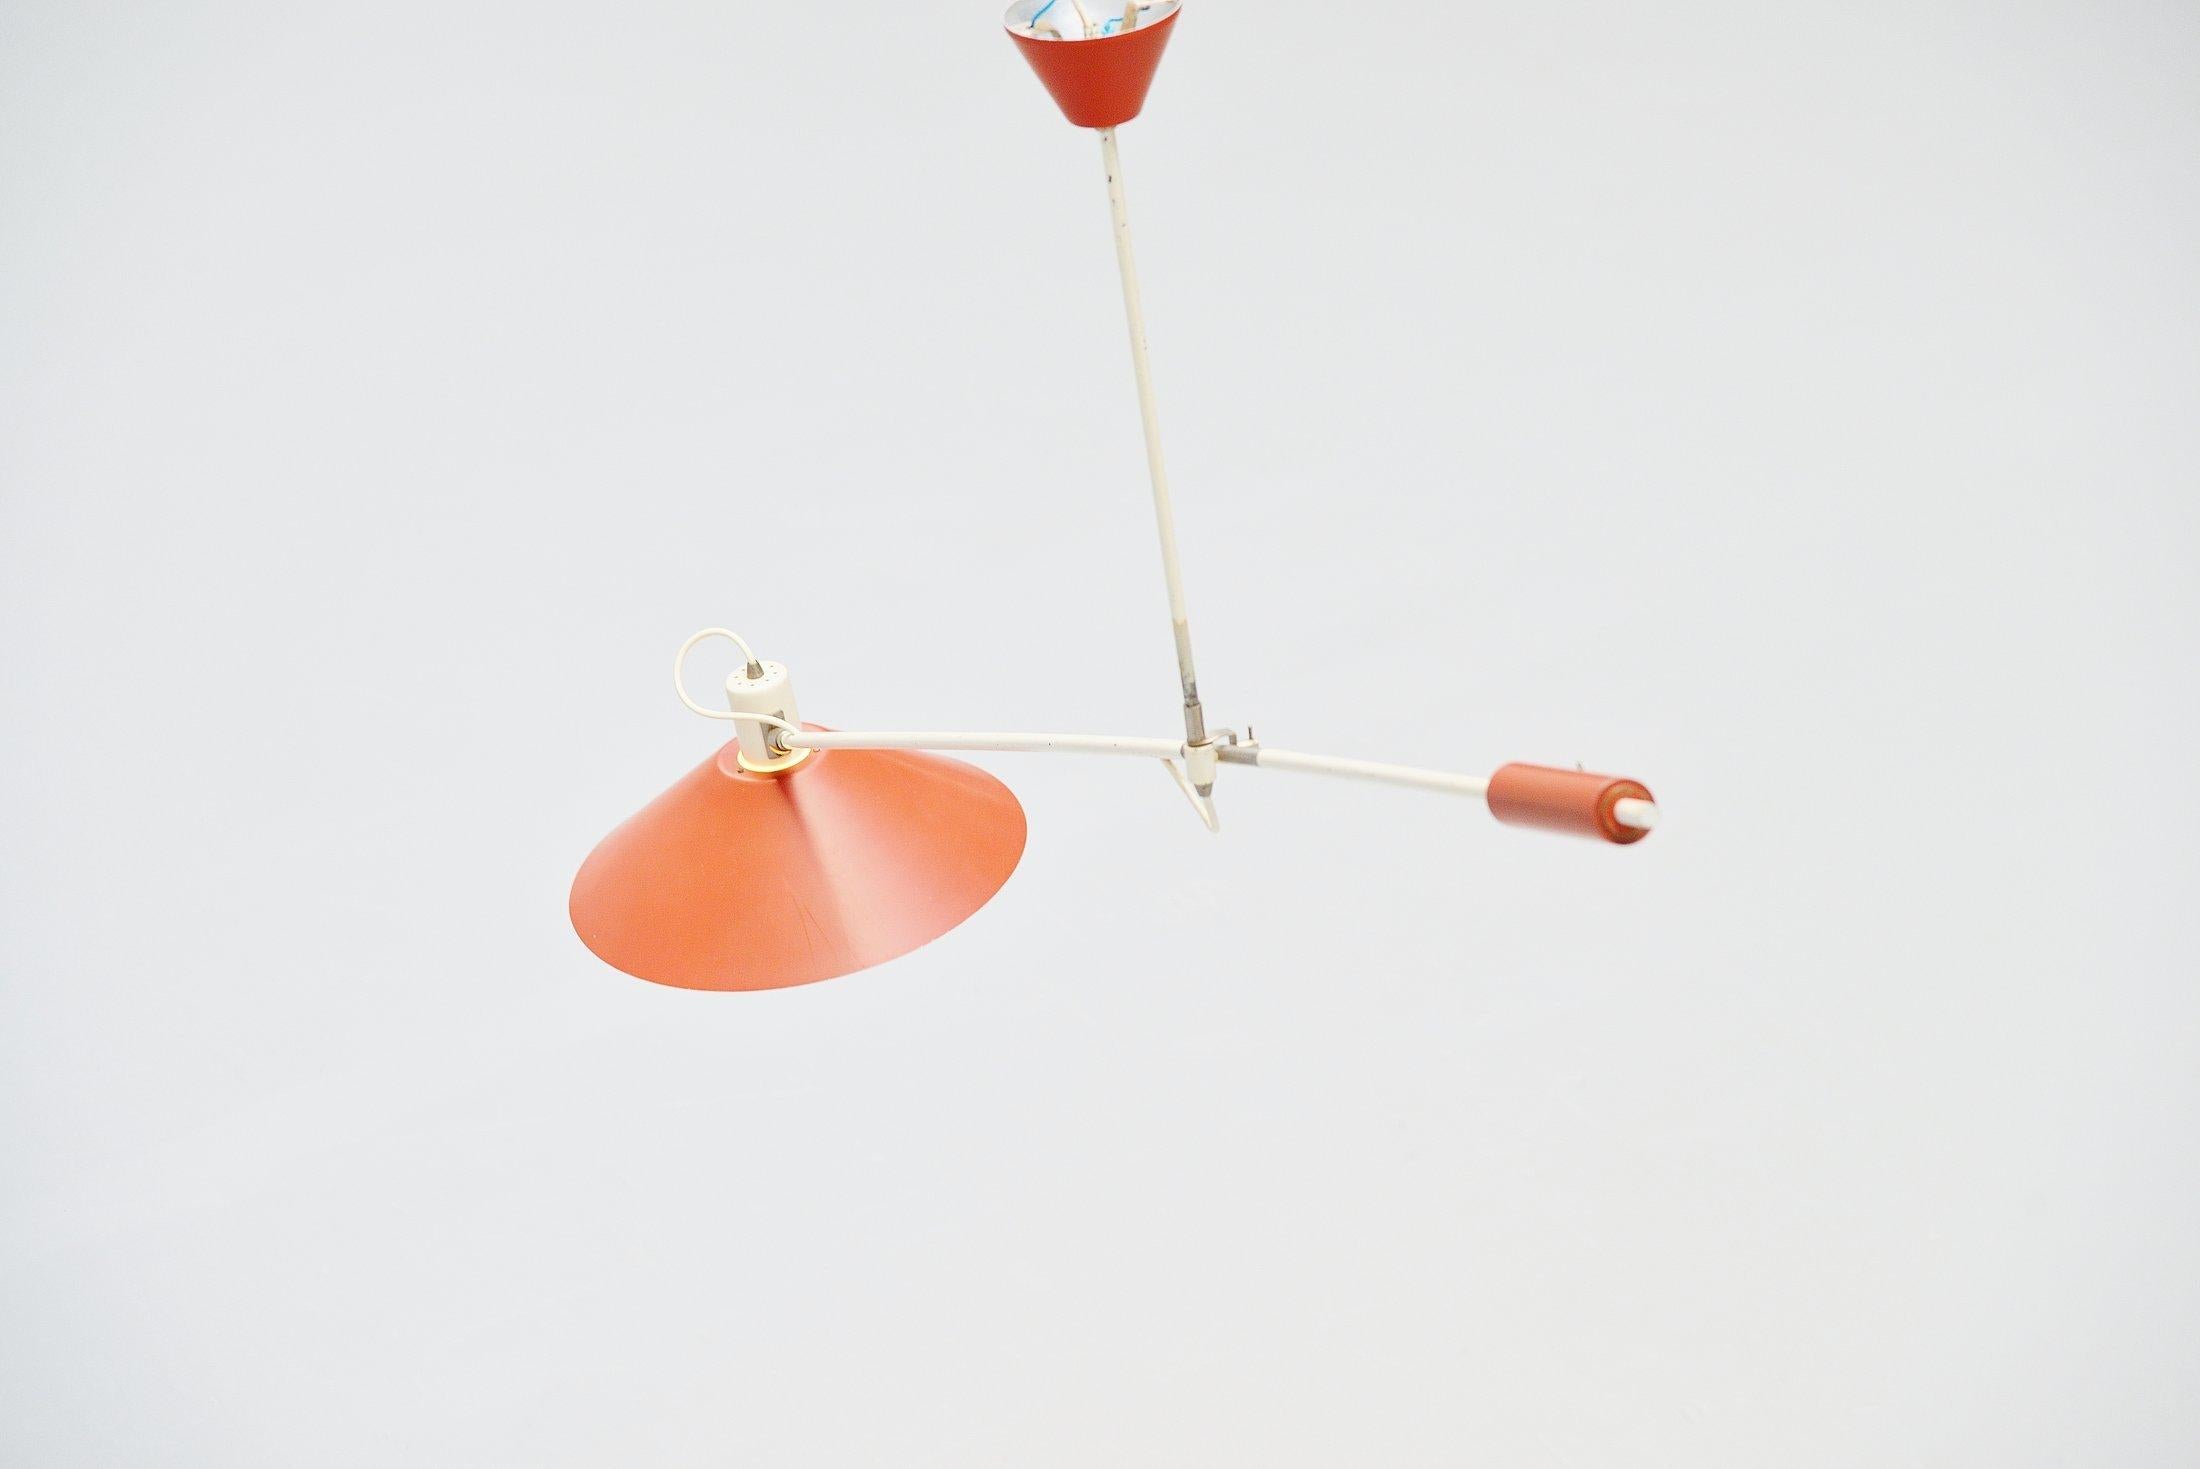 Cold-Painted Anvia JJM Hoogervorst Counter Balance Ceiling Lamp Holland, 1955